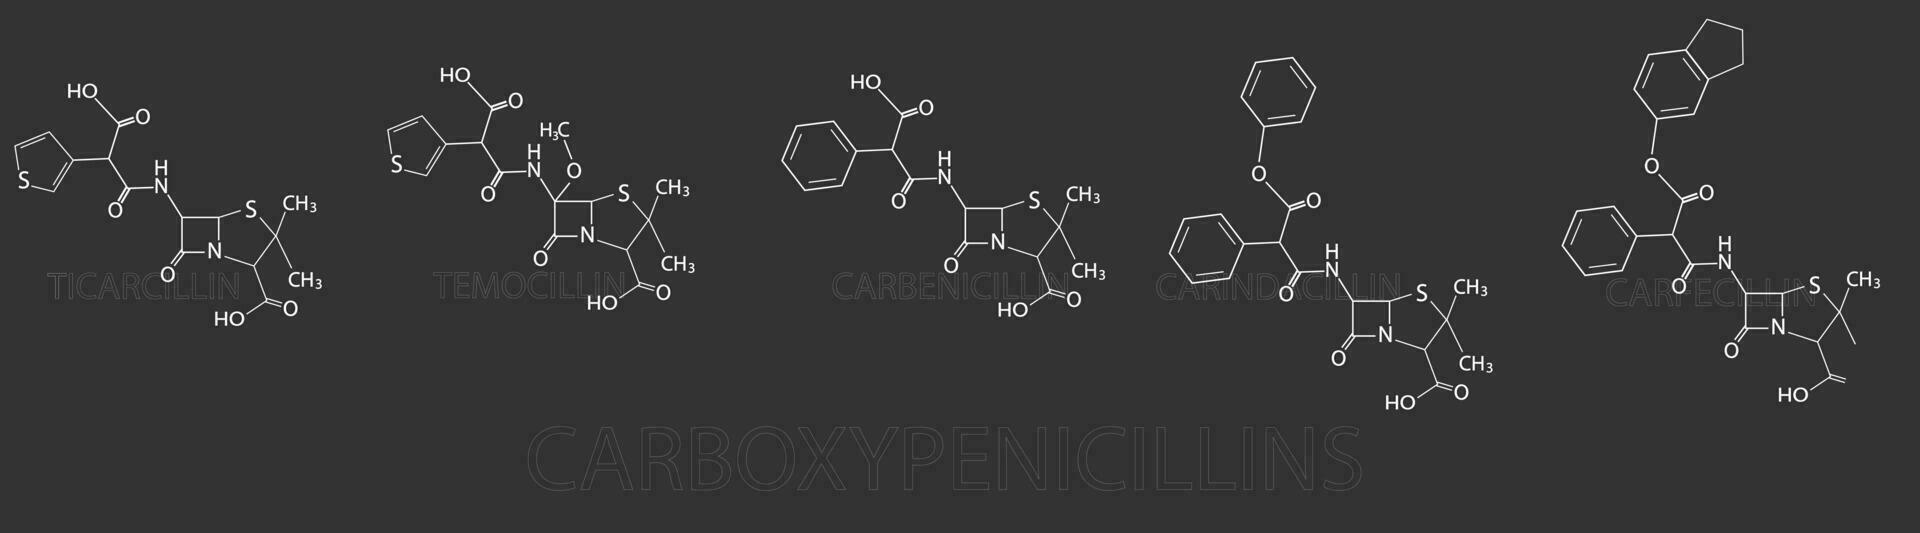 Carboxypenicilline molekular Skelett- chemisch Formel vektor